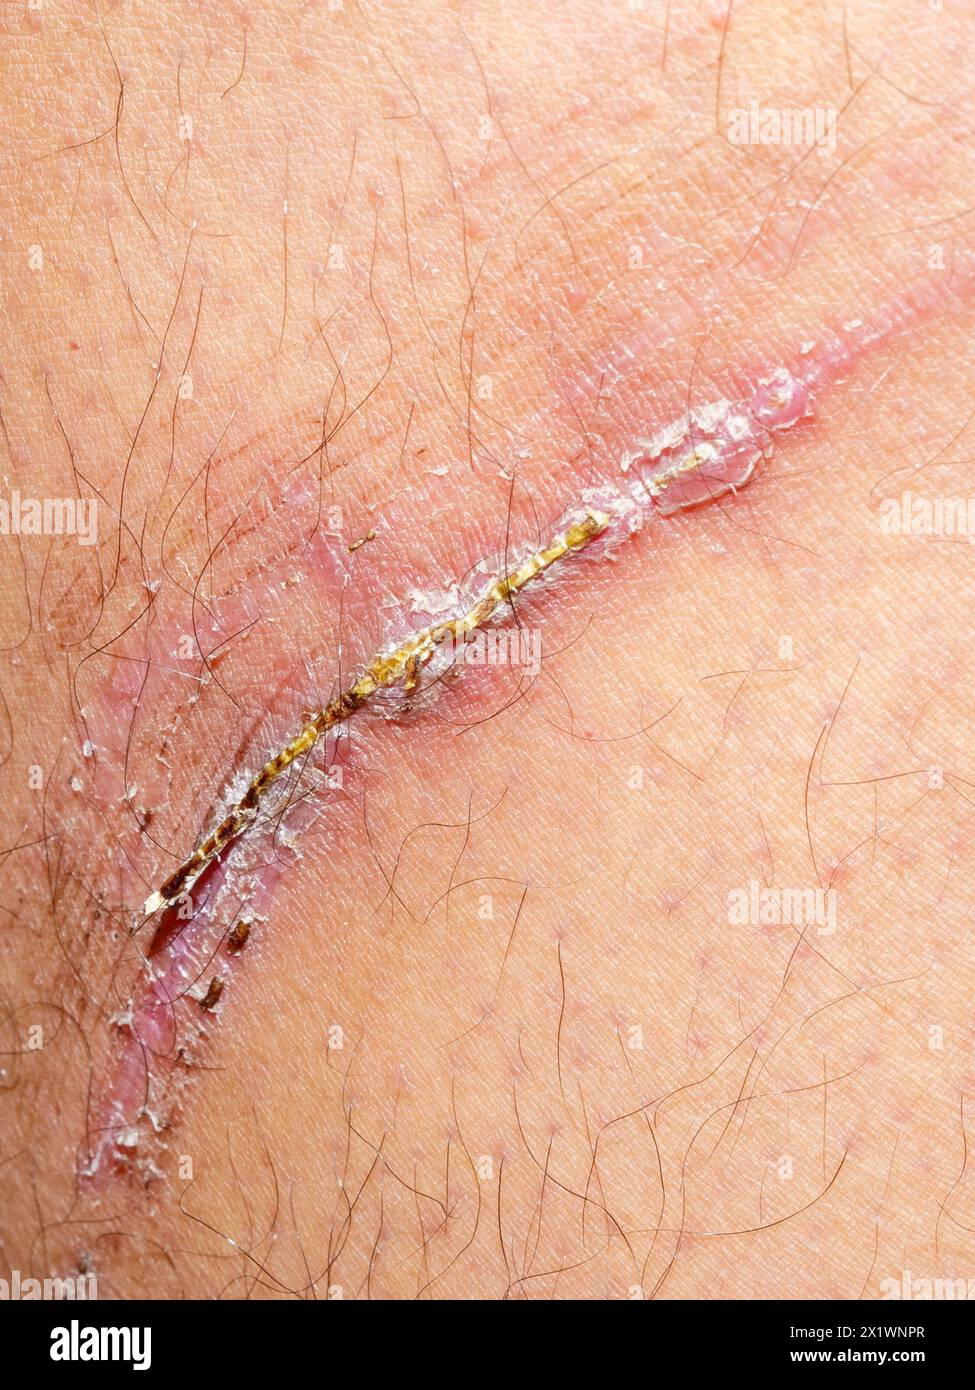 Nahaufnahme einer verletzten Haut, die nach dem Schaden ihren Heilungsprozess durchläuft. Stockfoto